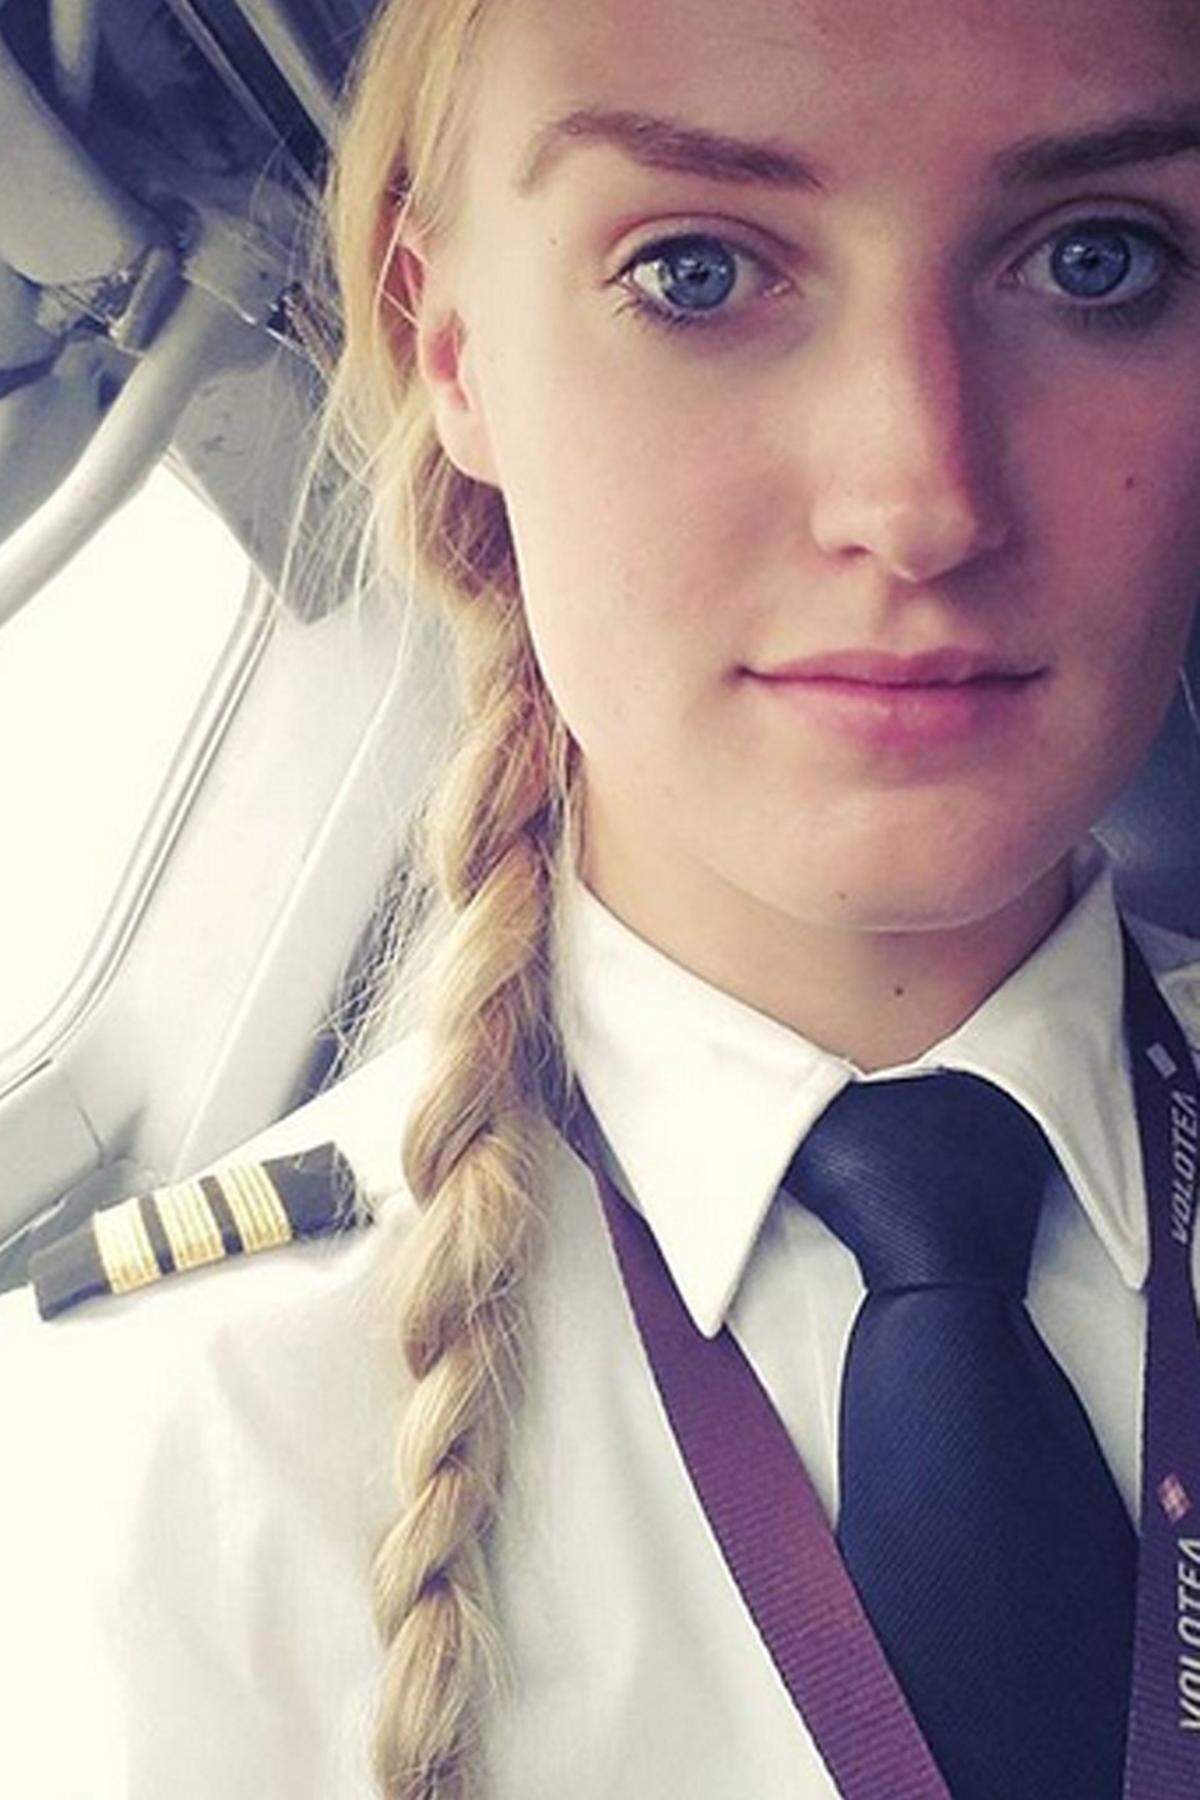 Lindy Kats aus Holland steuert ihre Boeing 717 von Italien aus rund um die Welt. Die 24-Jährige erfüllte sich vor drei Jahren ihren Traum vom Fliegen, seitdem sitzt sie fest im Cockpit, wie unter anderem "The Sun" berichtet.  